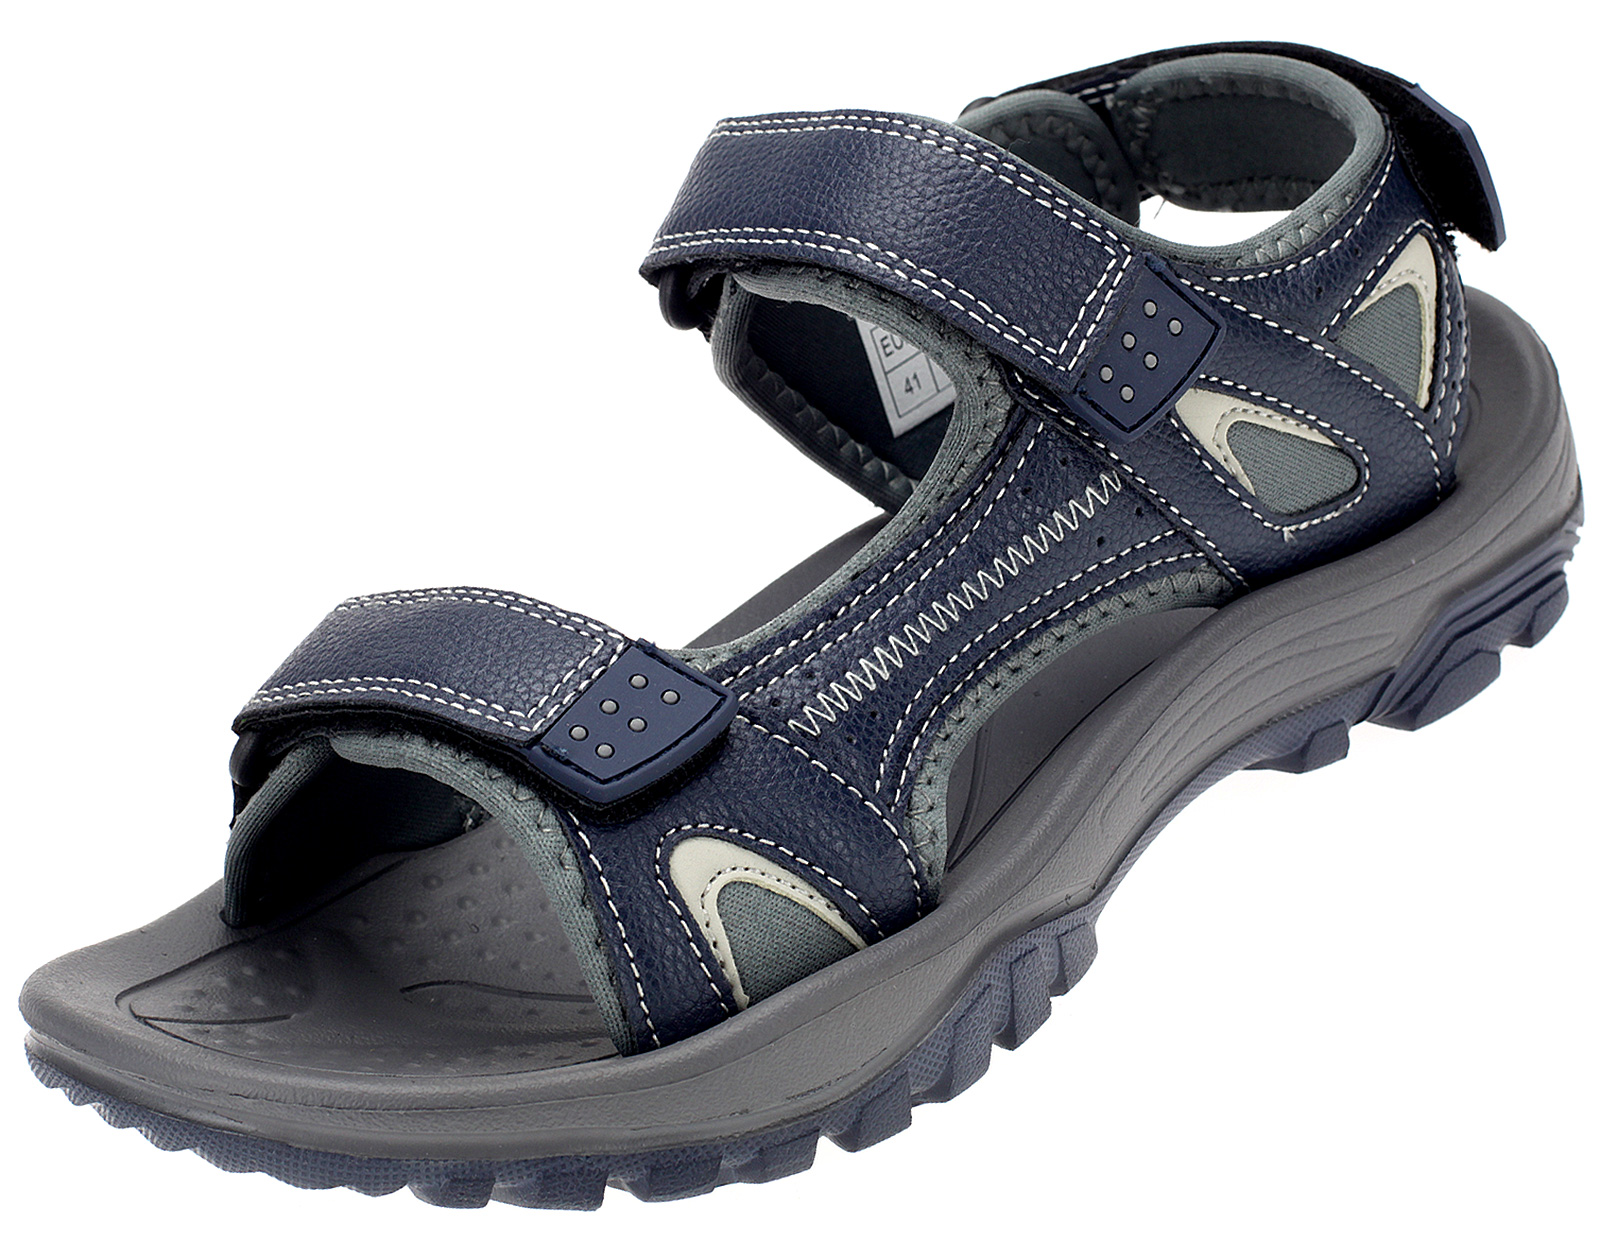 Herren Sandale Trekking-Sandalen Outdoor Sommer Männer Schuhe 41-45 6876